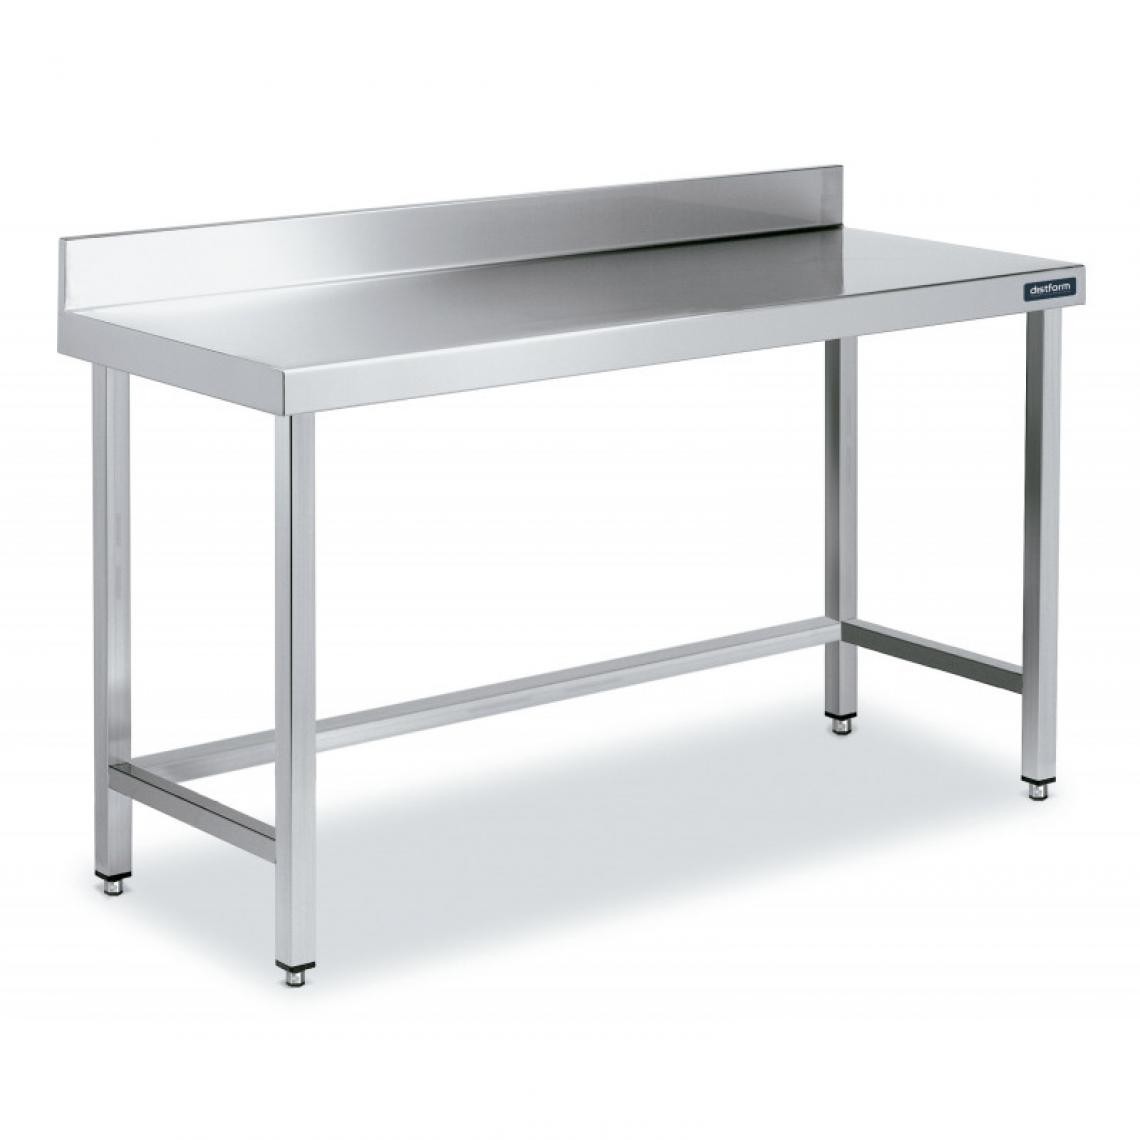 DISTFORM - Table Inox de Travail avec Dosseret Gamme 900 - Distform - Acier inoxydable1200x900 - Tables à manger